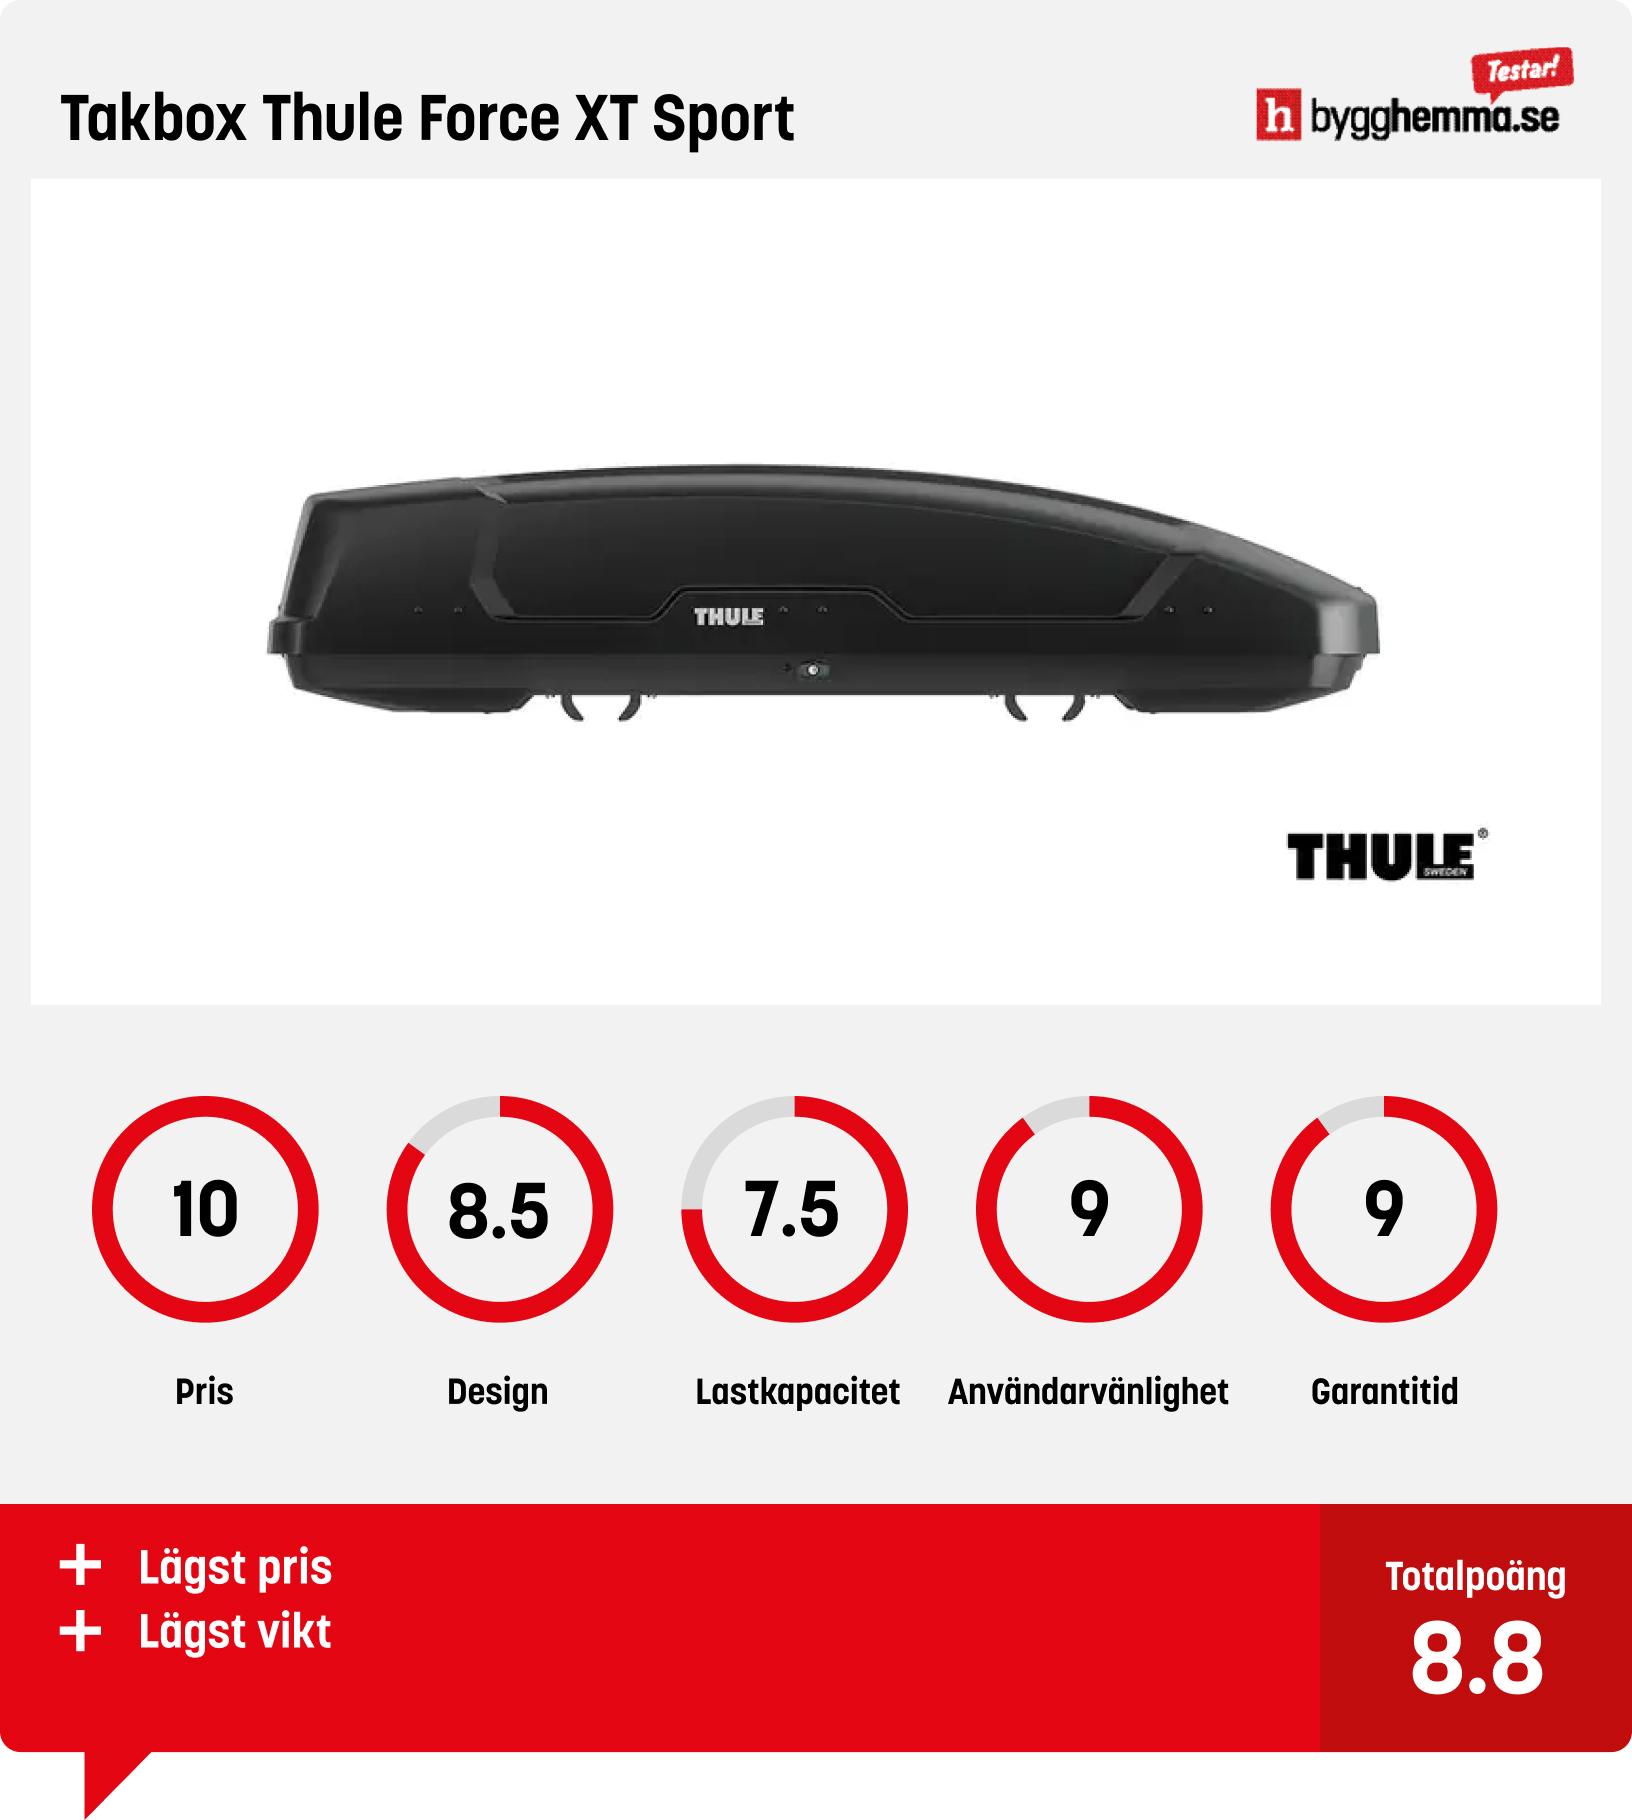 Bäst i test takbox Thule Force XT Sport